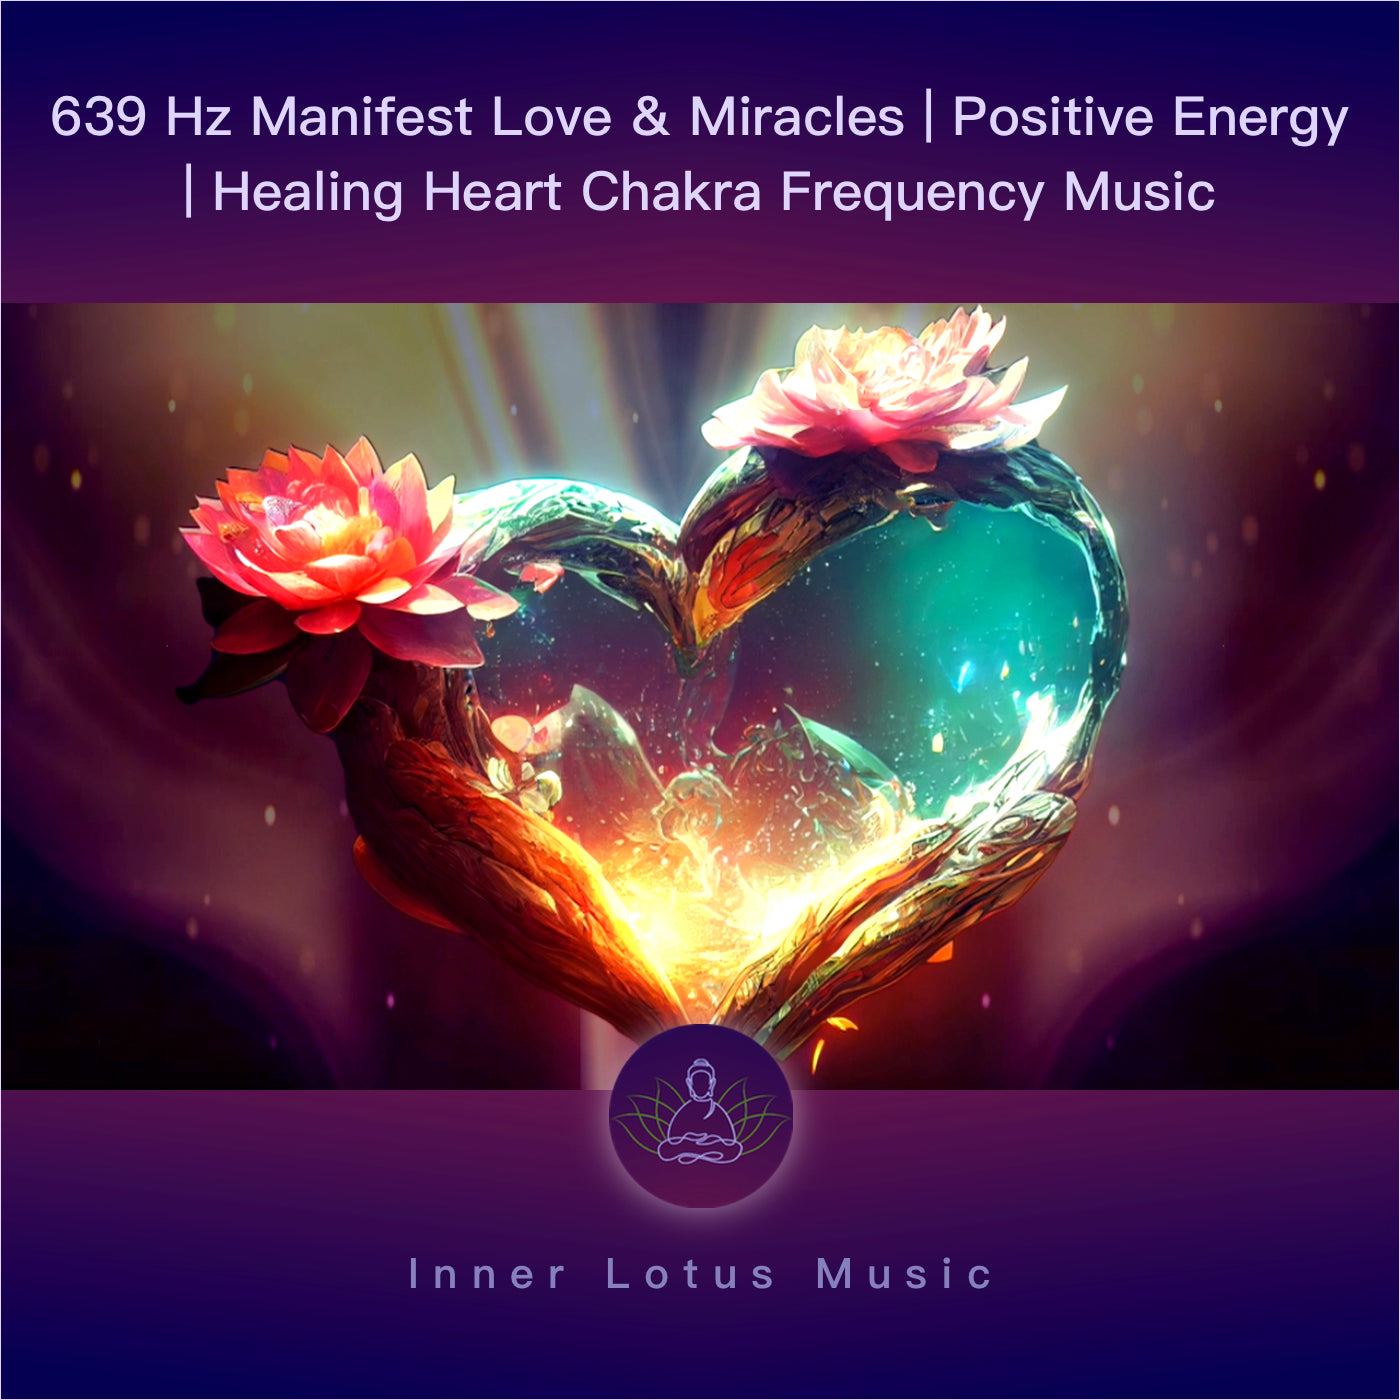 639 Hz Manifiesta Amor y Milagros | Energía positiva | Música Curativa Frecuencia Chakra Corazón